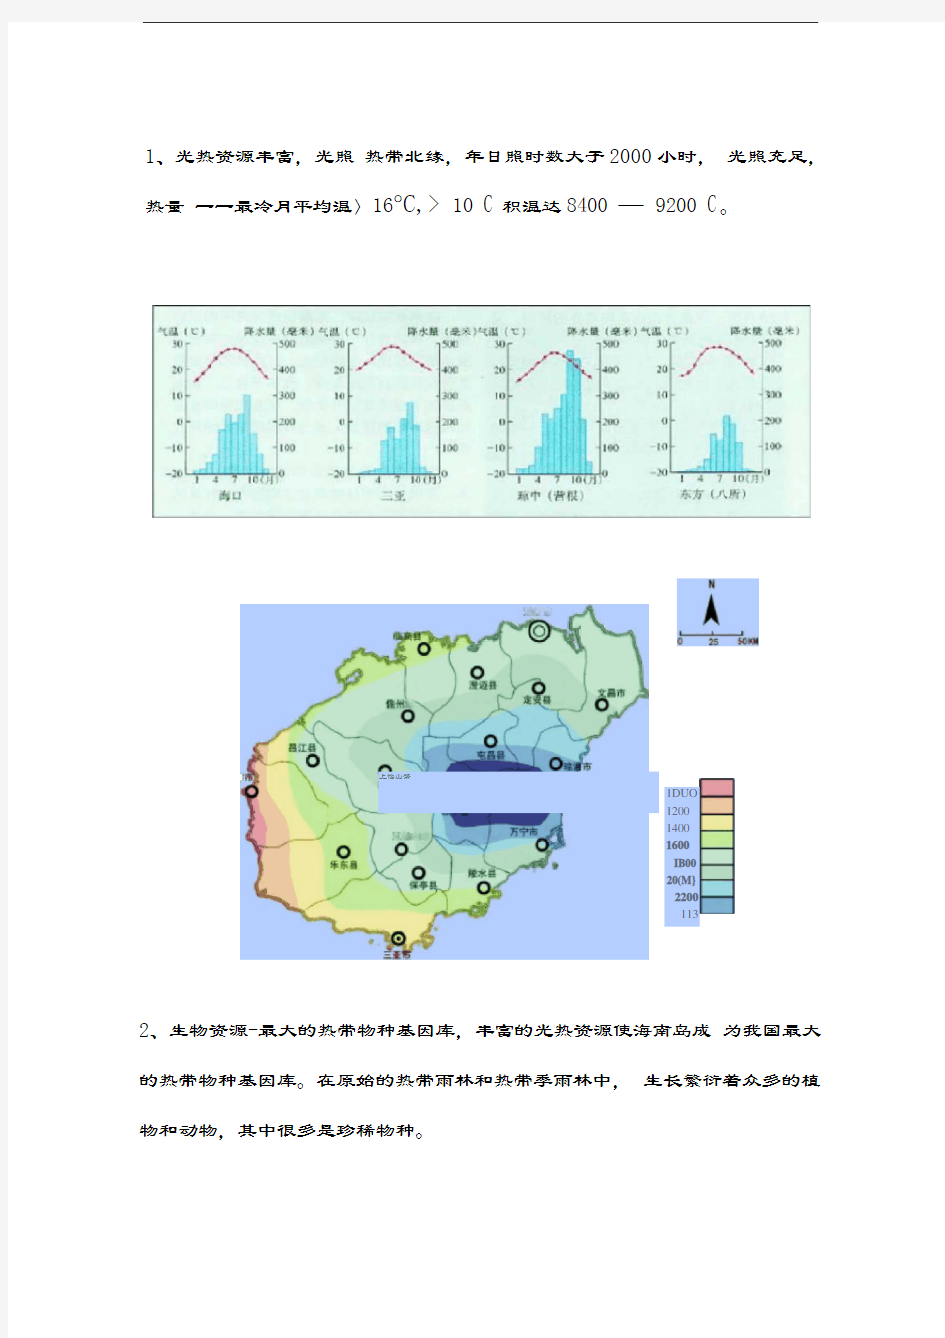 海南省绿地规划